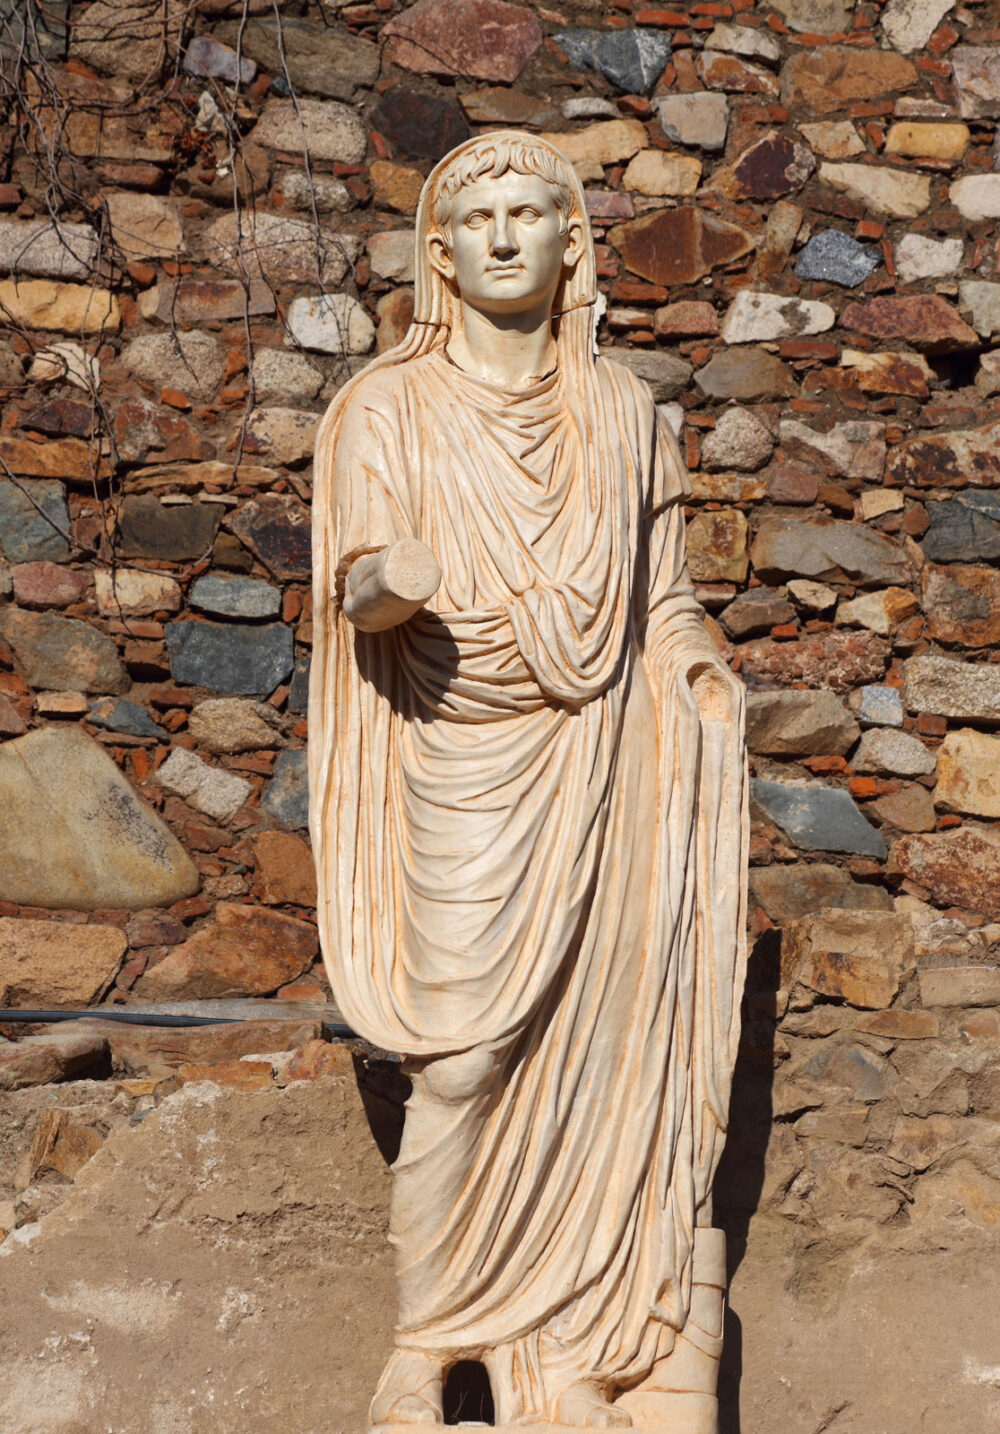 trang phuc ton giao rome e1612795519607 - Rome: Trái tim của một đế quốc lẫy lừng